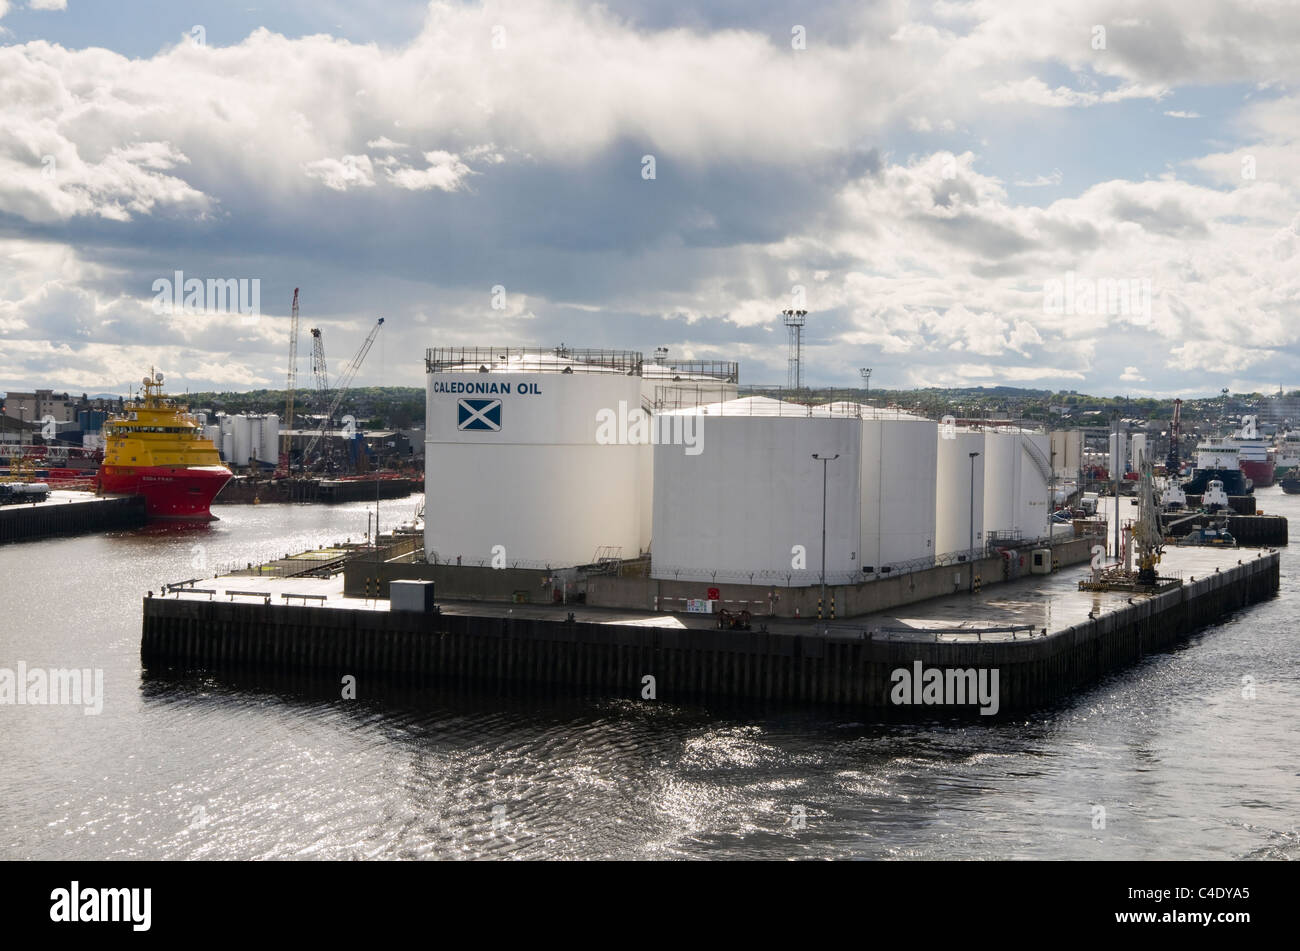 El punto derecho, Aberdeen, aberdeenshire, Escocia, Reino Unido. Aceite de Caledonian tanques de almacenamiento para el combustible de offshore campos petrolíferos del Mar del Norte Foto de stock